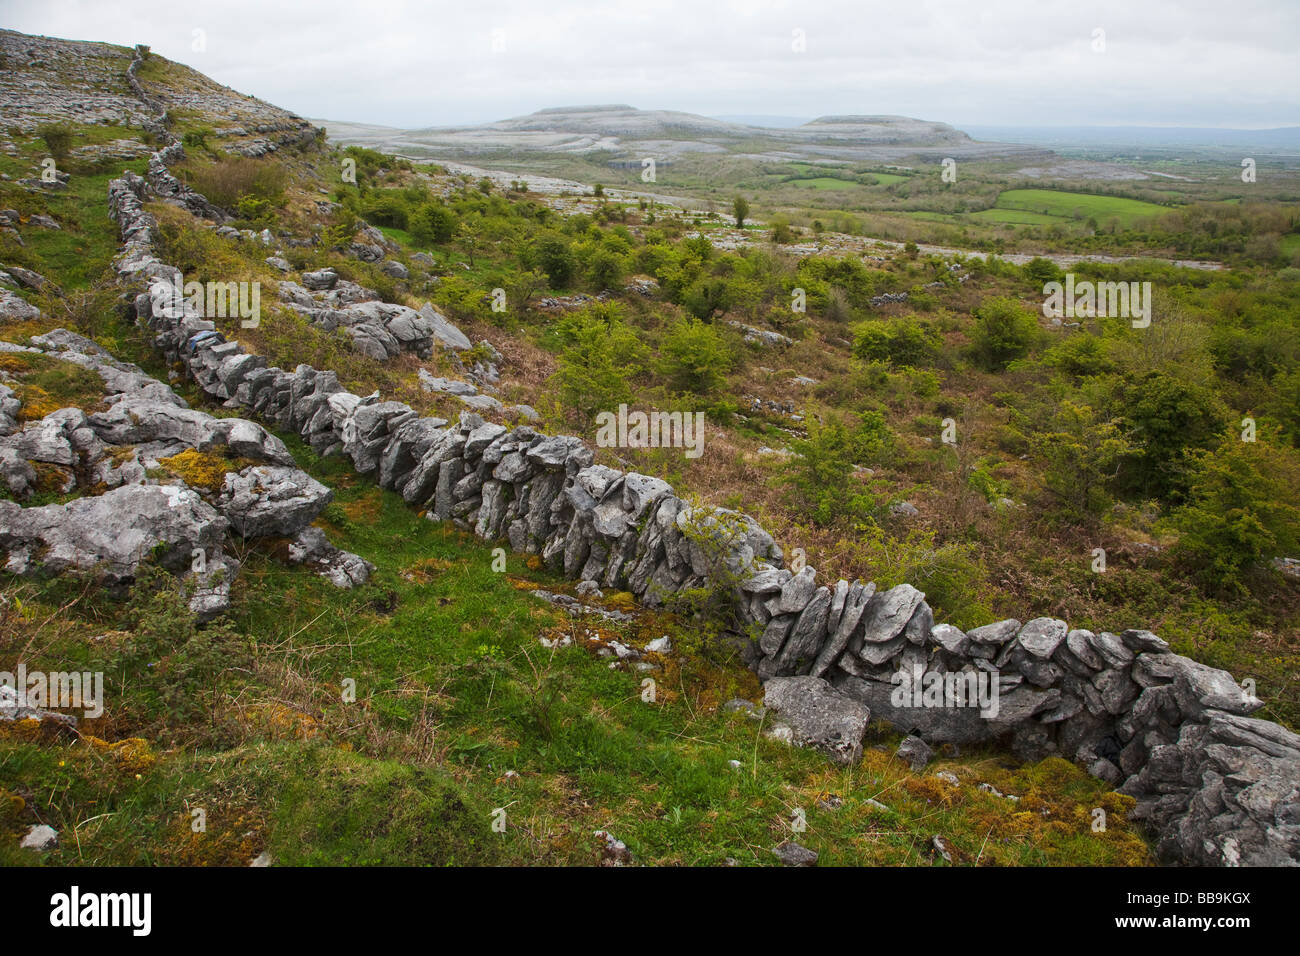 Kalkstein Bürgersteige und Steinmauern der Fahee North Turloughmore Burren County Clare Irland Irland irische Republik Europ suchen Stockfoto